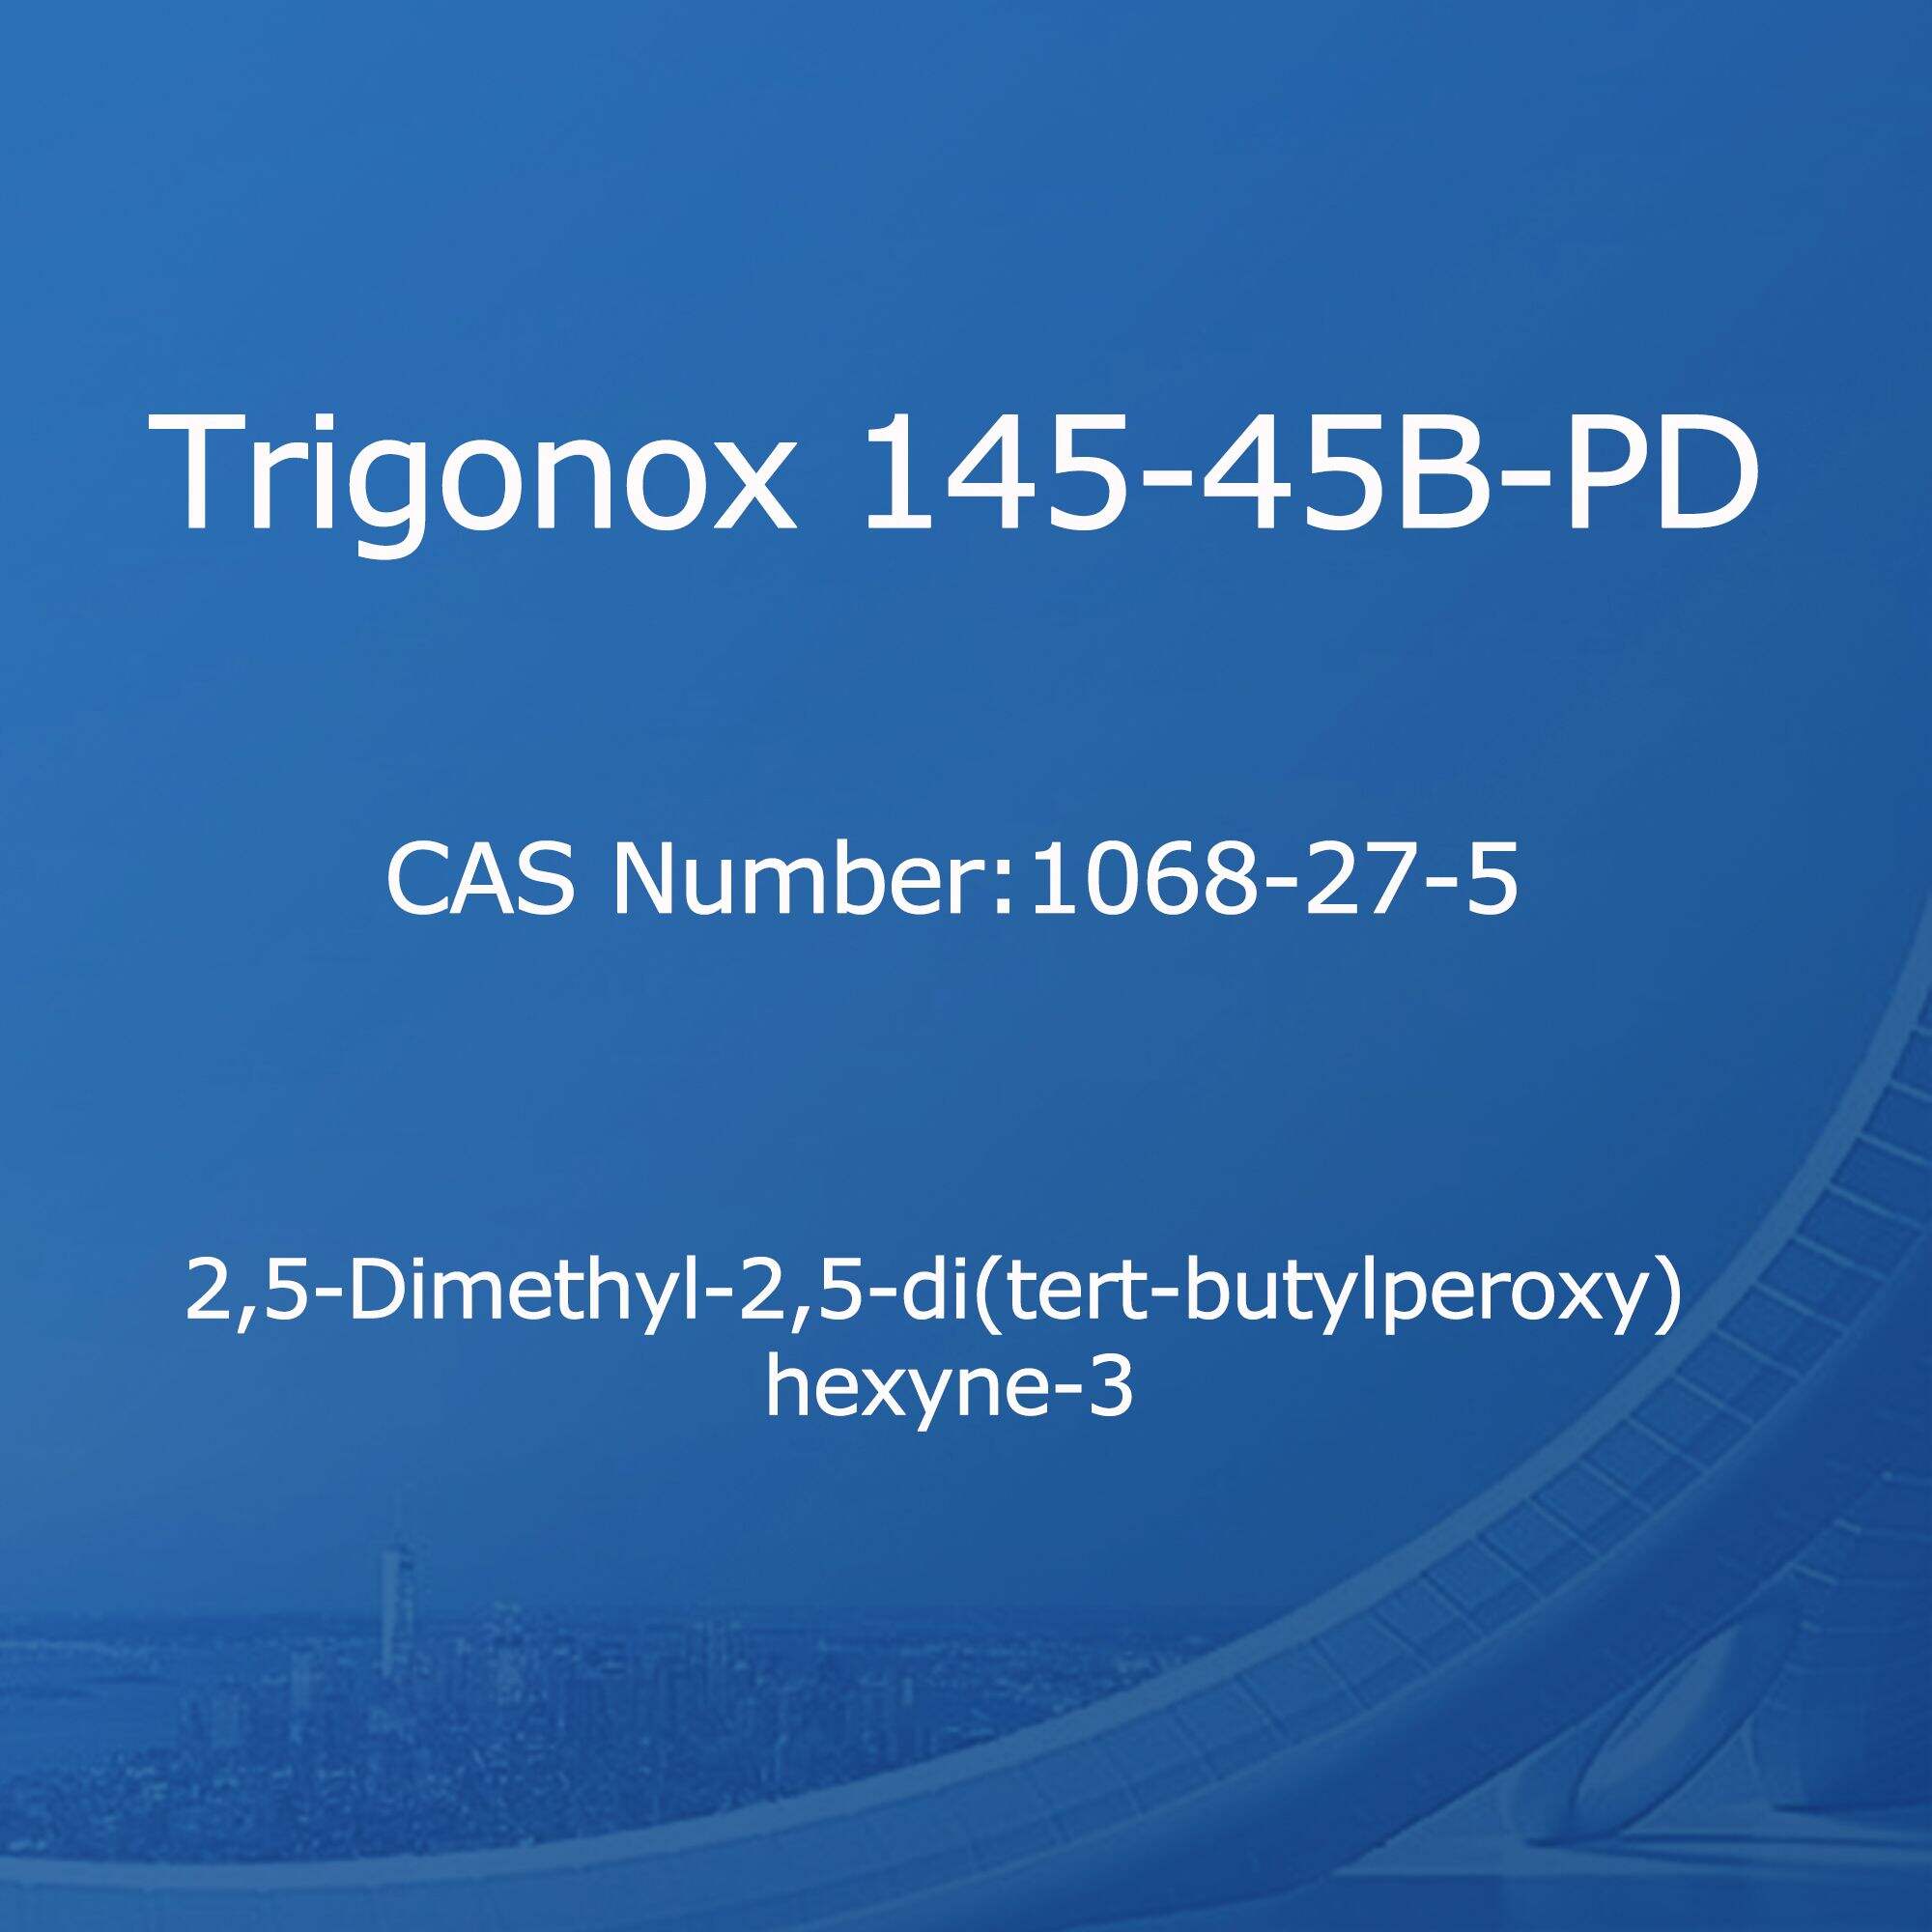 Trigonox 145-45B-PD,2,5-Dimethyl-2,5-di(tert-butylperoxy) hexyne-3